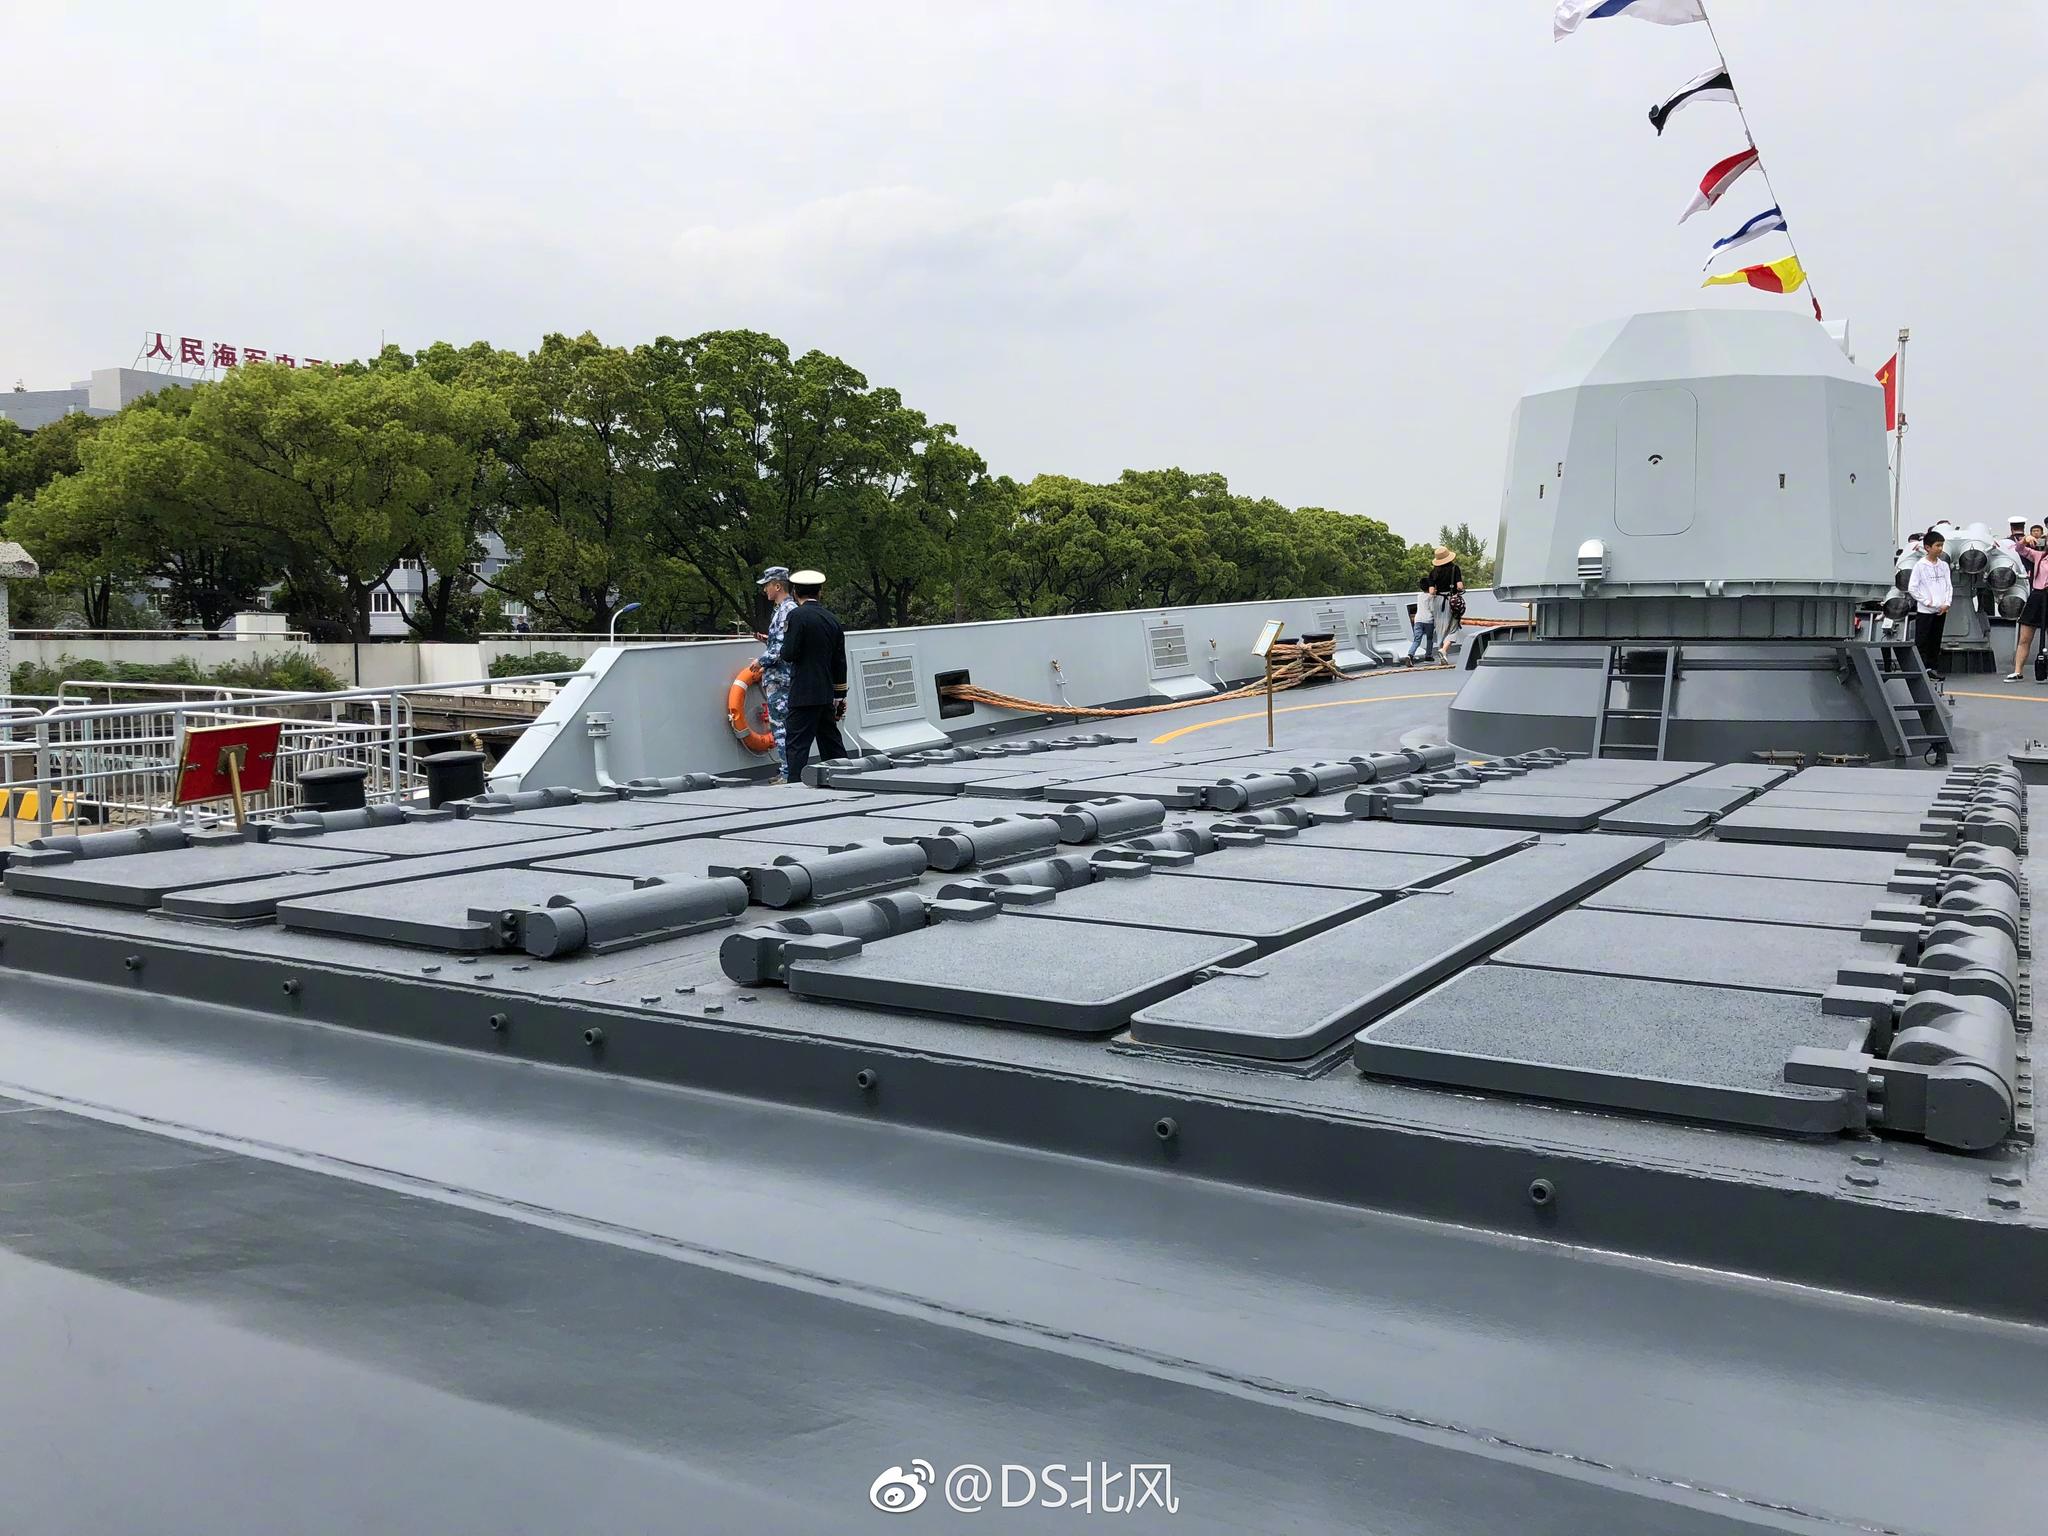 扬州号导弹护卫舰(舷号 578)为054A型导弹护卫舰